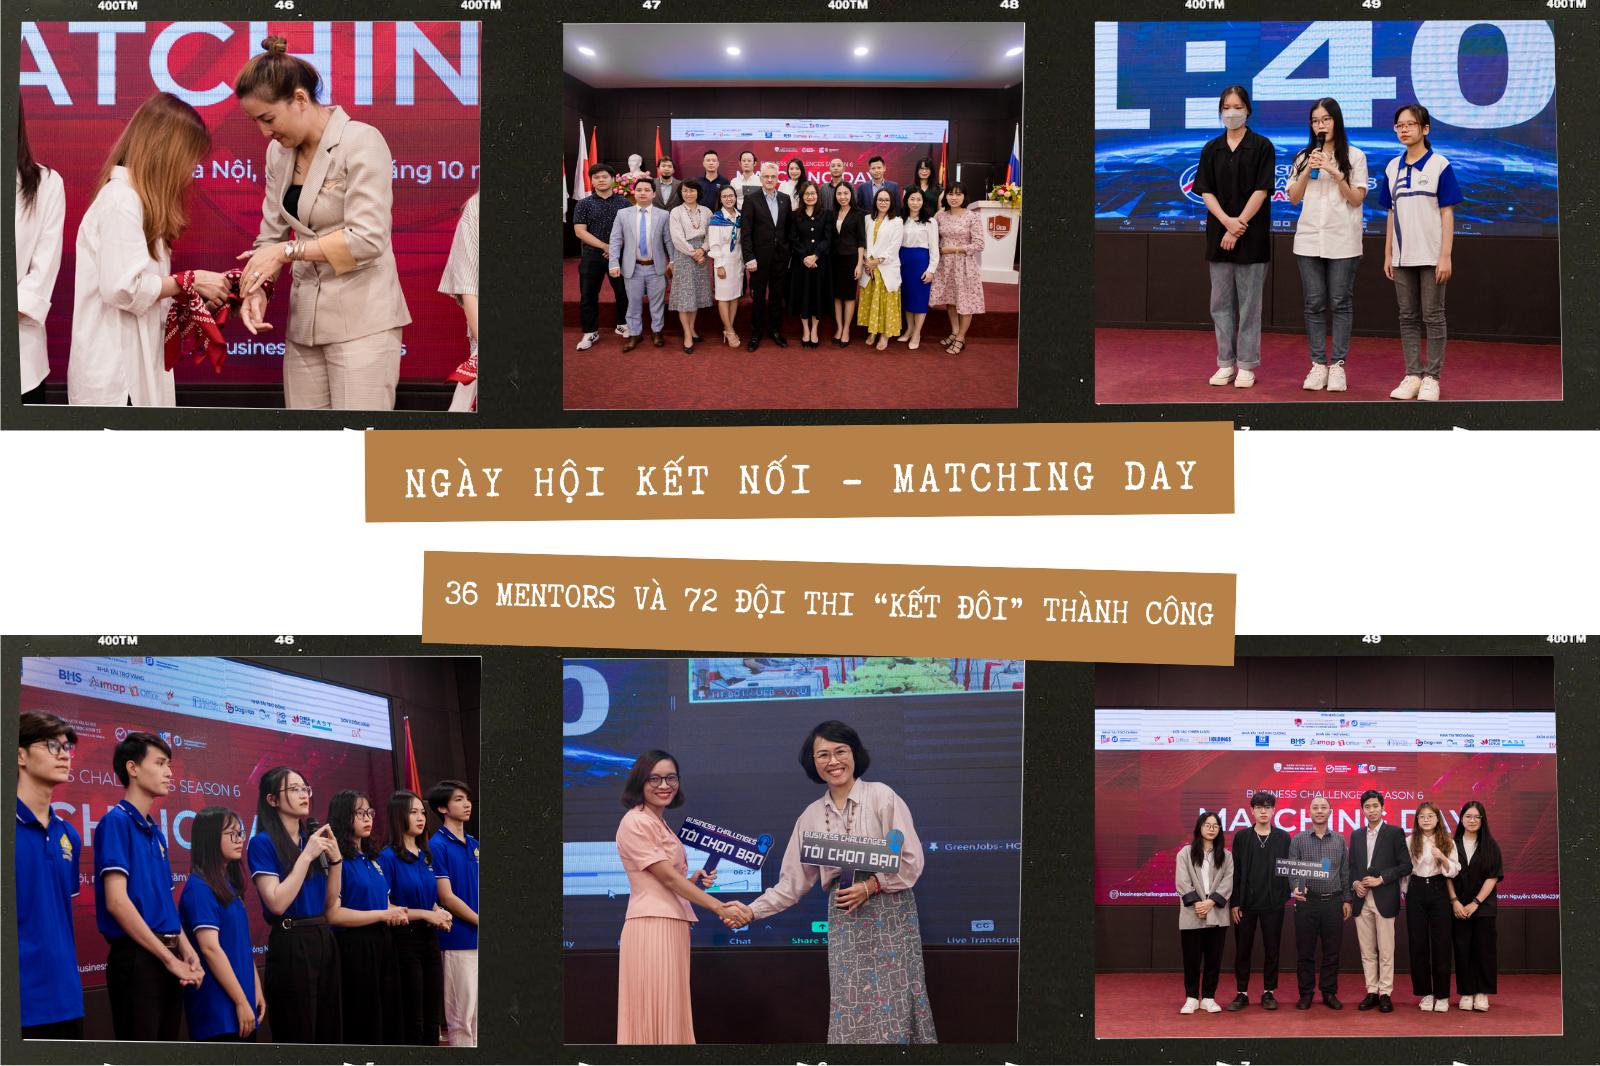 Ngày hội Matching Day Business Challenges: 36 Mentors và 72 đội thi “kết đôi” thành công 